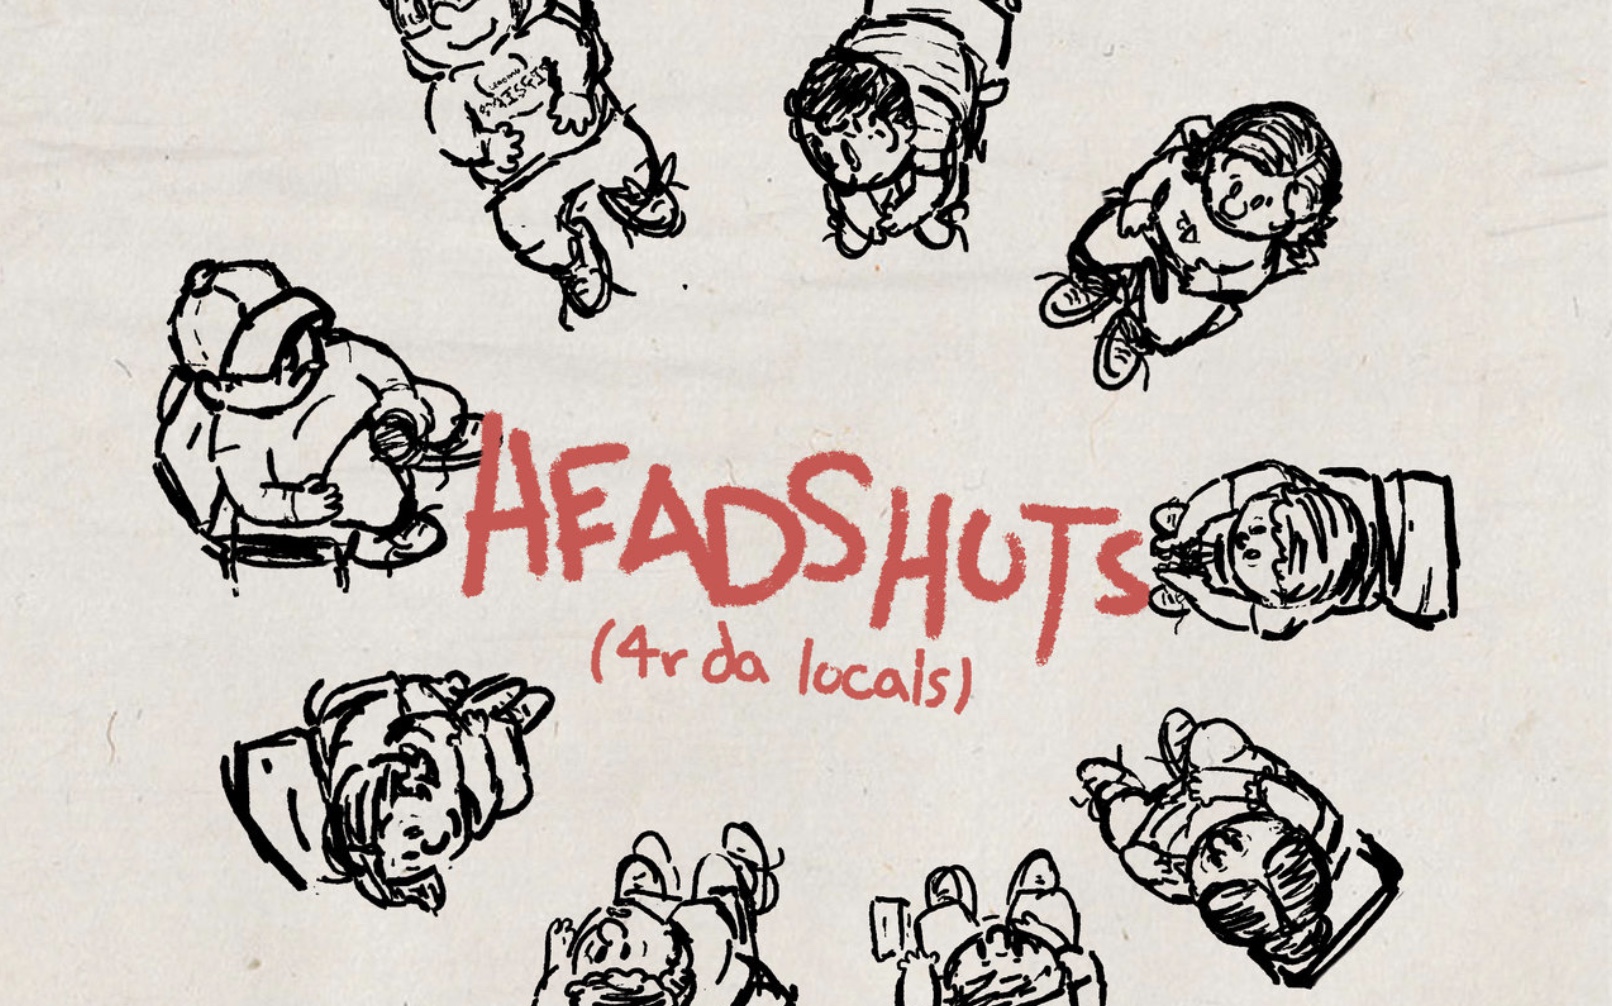 Headshots isaiah rashad lyrics